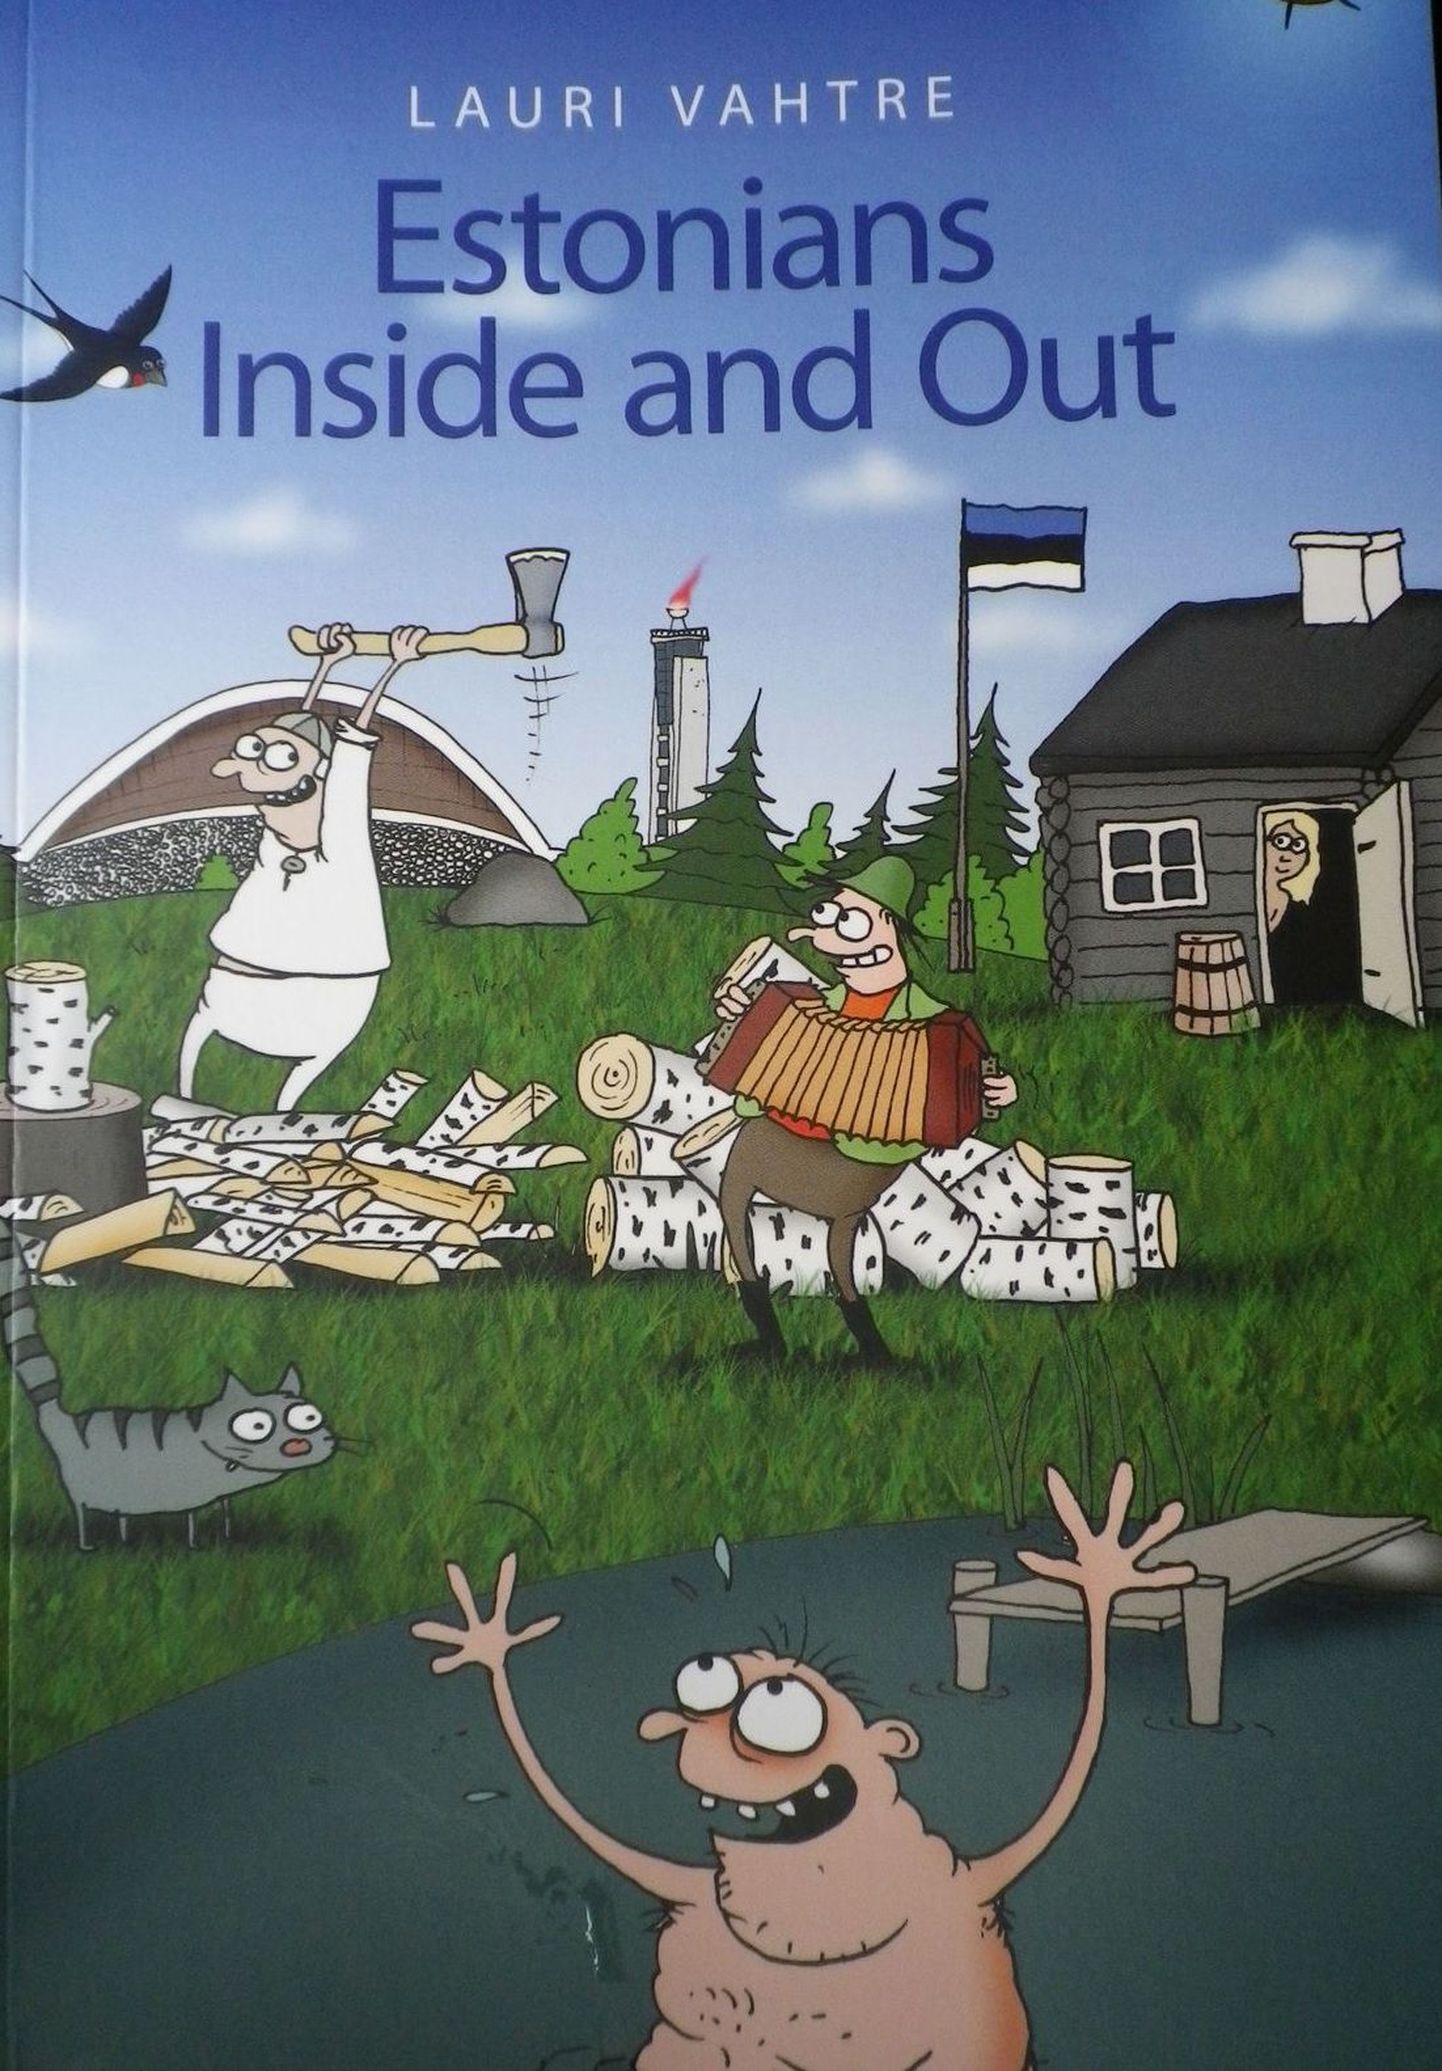 Книга Лаури Вахтре "Estonians Inside and Out" (художник Урмас Немвальтс).